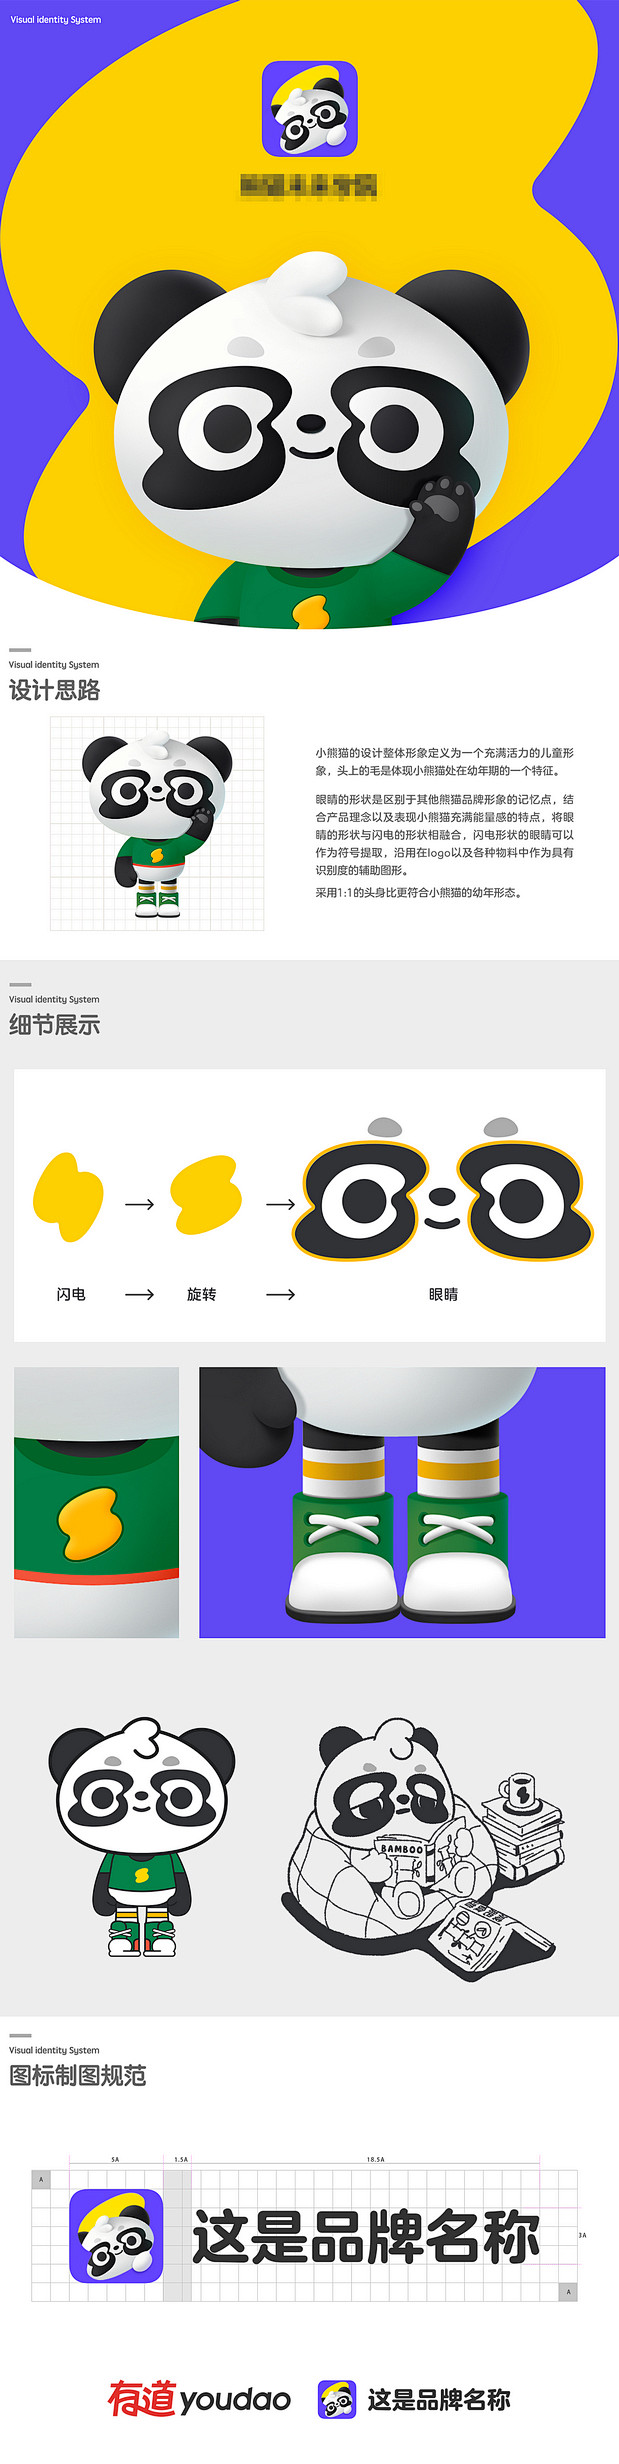 熊猫IP | 暖雀网-吉祥物设计/ip设...